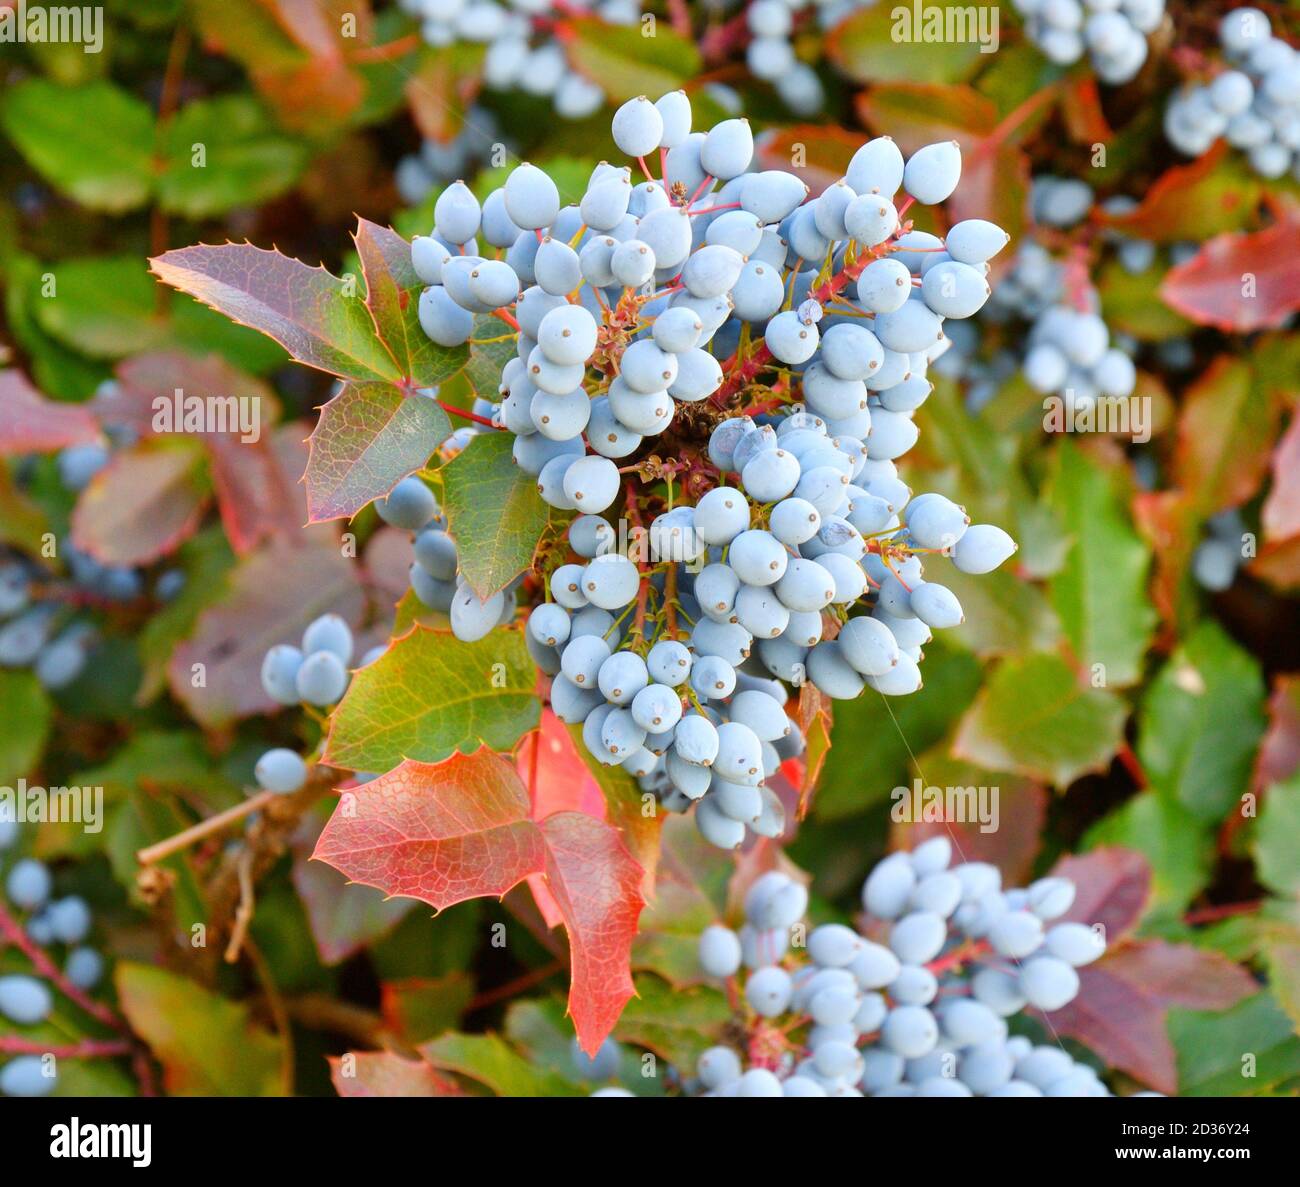 Blue Mahonia berries (La. Mahonia aquifolium) or Oregon grapes in autumn garden Stock Photo